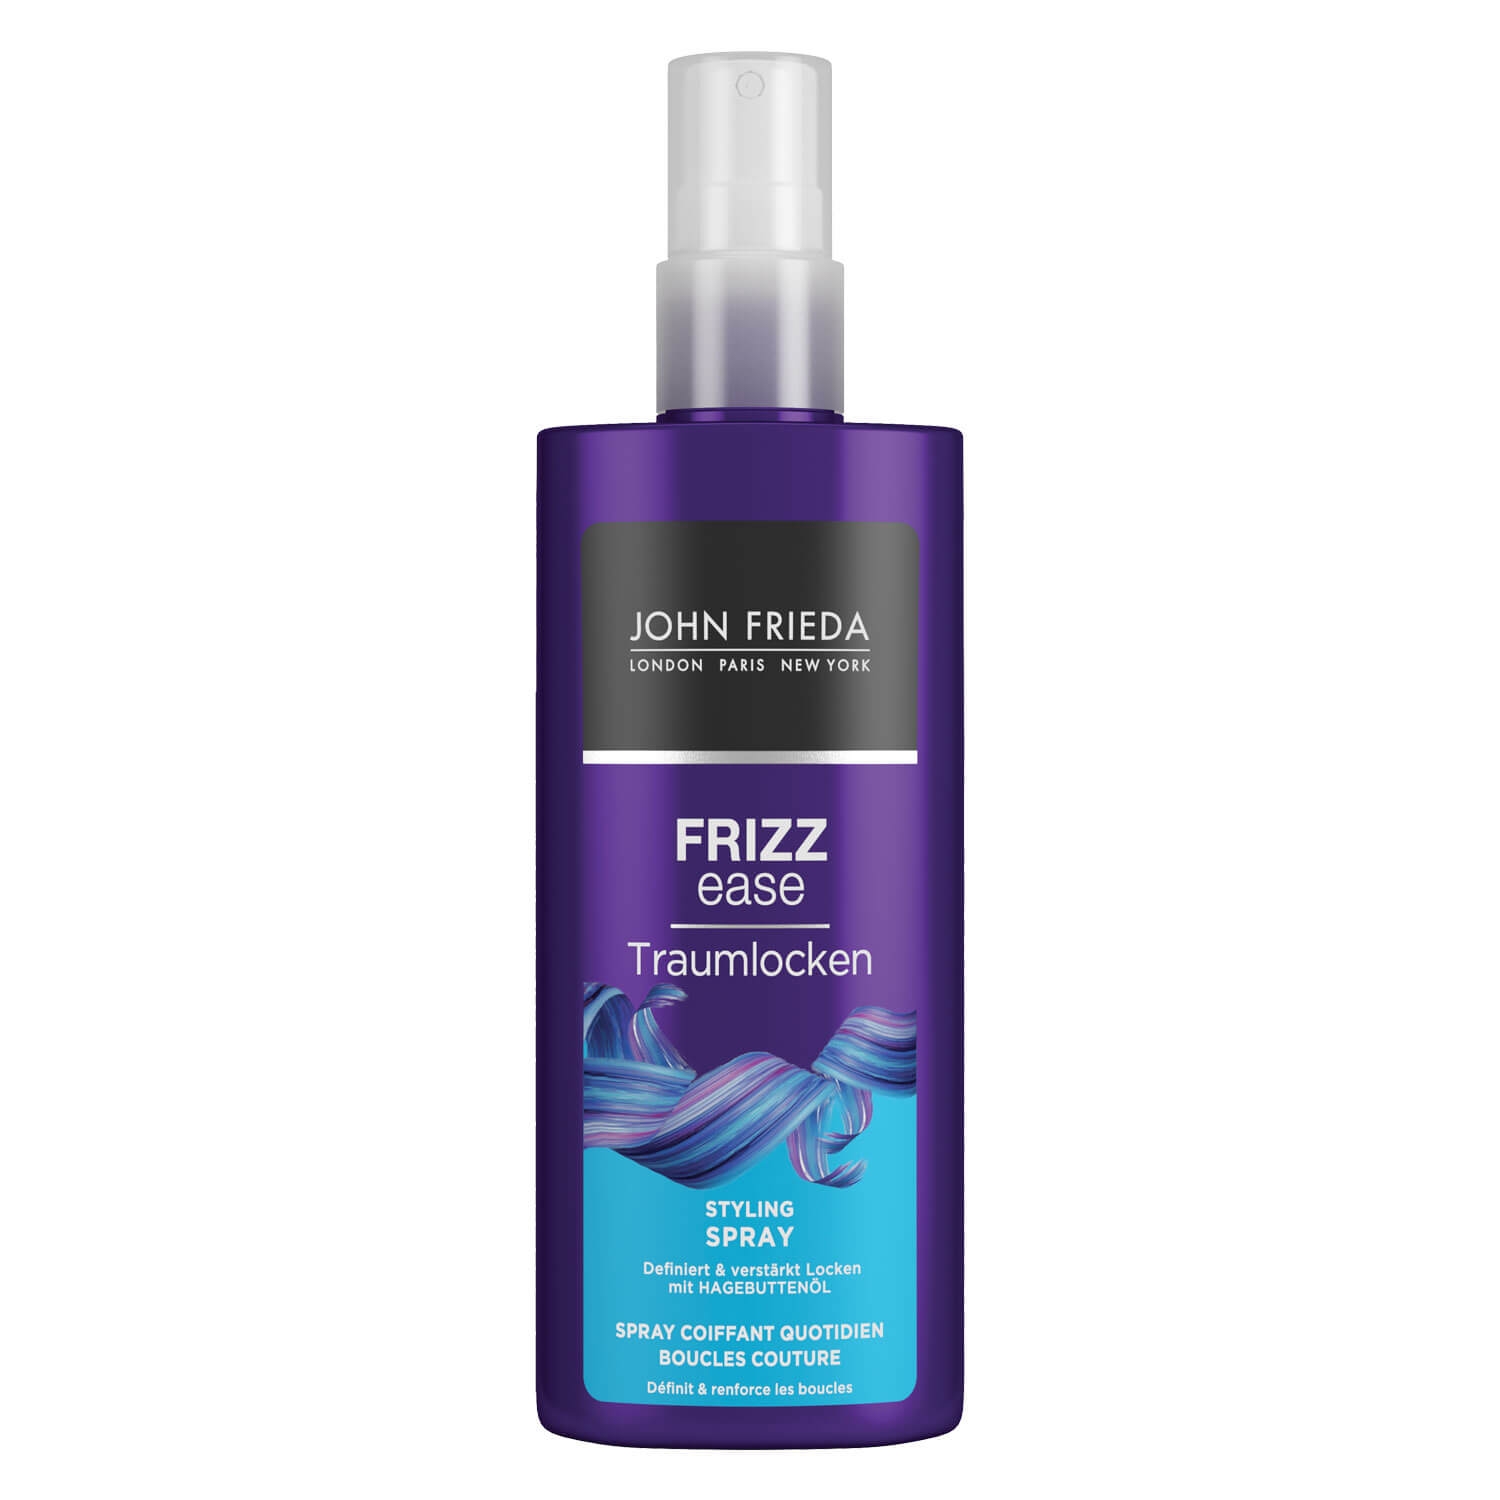 Produktbild von Frizz Ease - Traumlocken Styling Spray